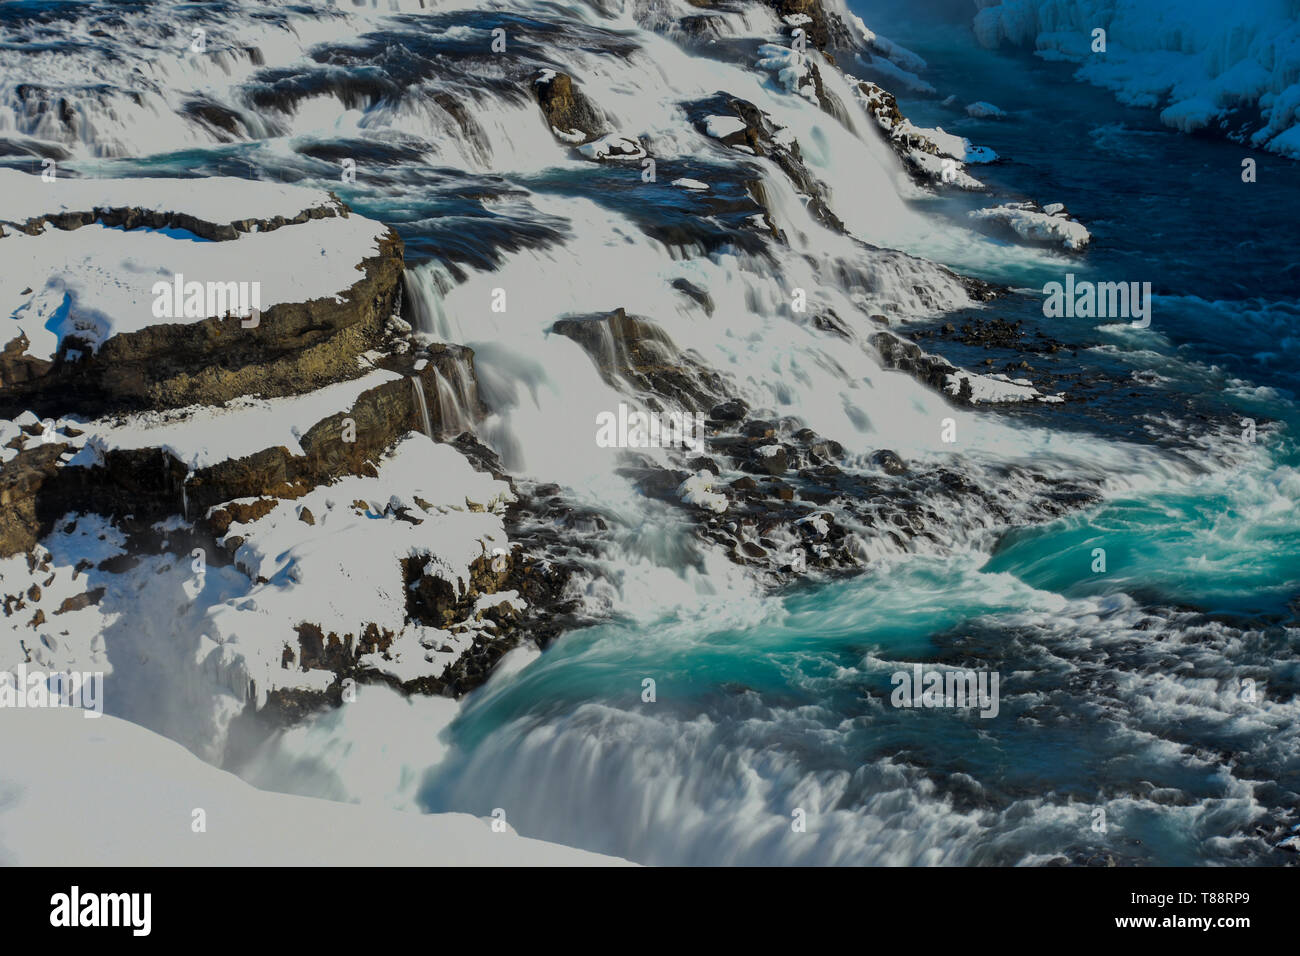 Cascade de Gullfoss, dans le cercle d'or, de l'Islande dans la neige Banque D'Images